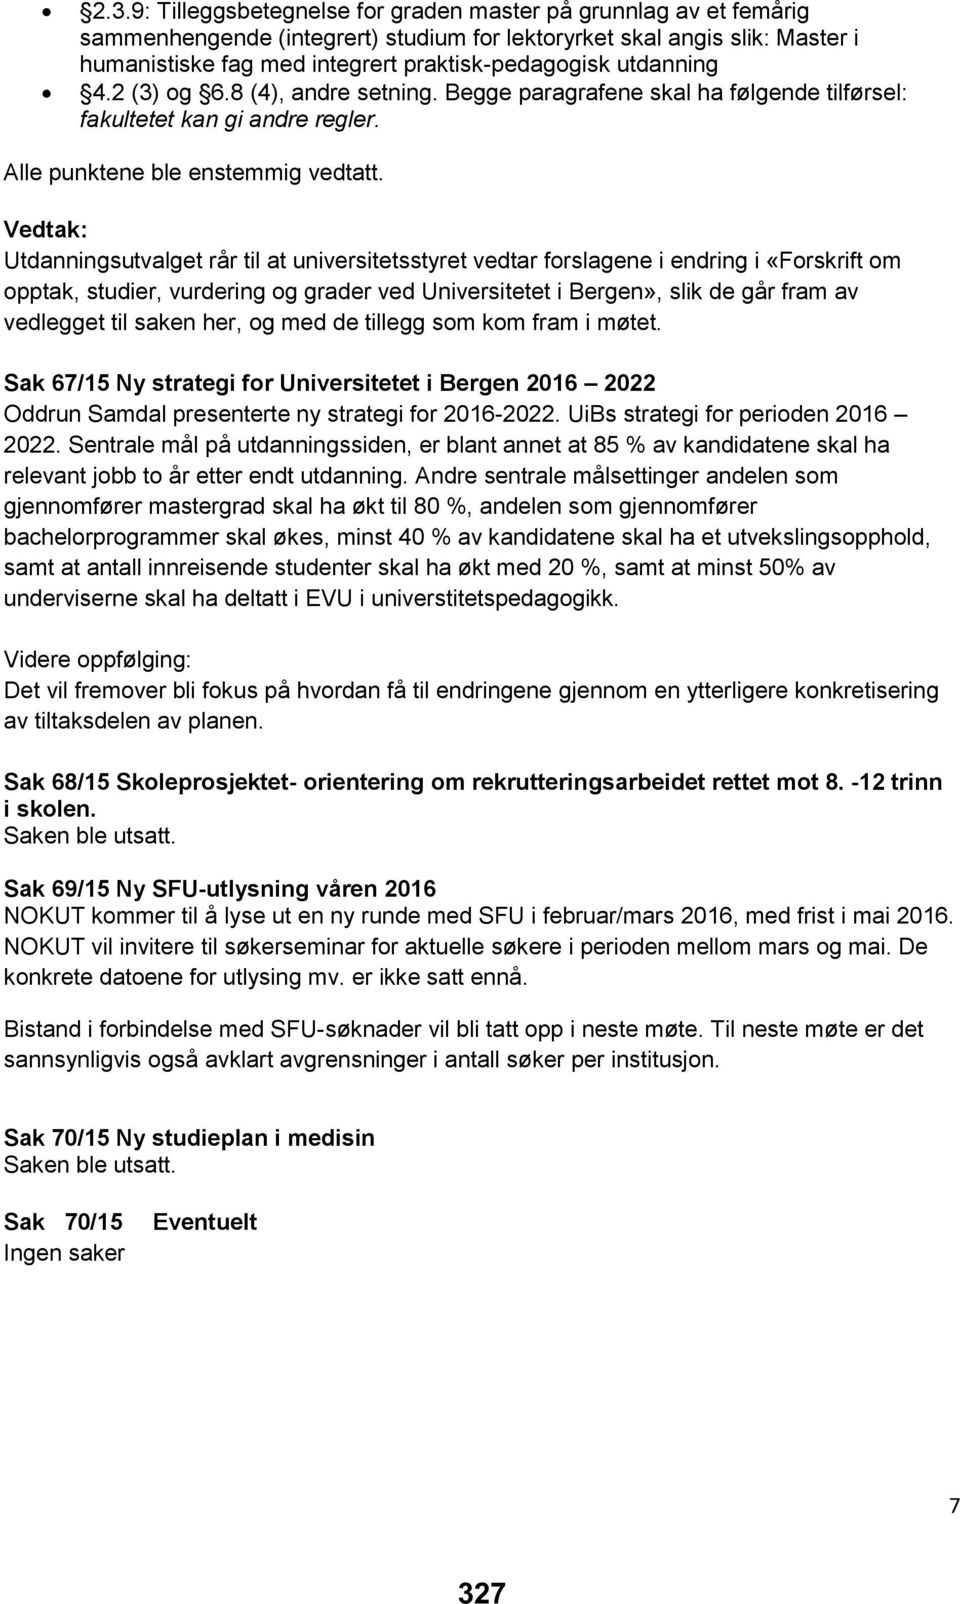 Vedtak: Utdanningsutvalget rår til at universitetsstyret vedtar forslagene i endring i «Forskrift om opptak, studier, vurdering og grader ved Universitetet i Bergen», slik de går fram av vedlegget